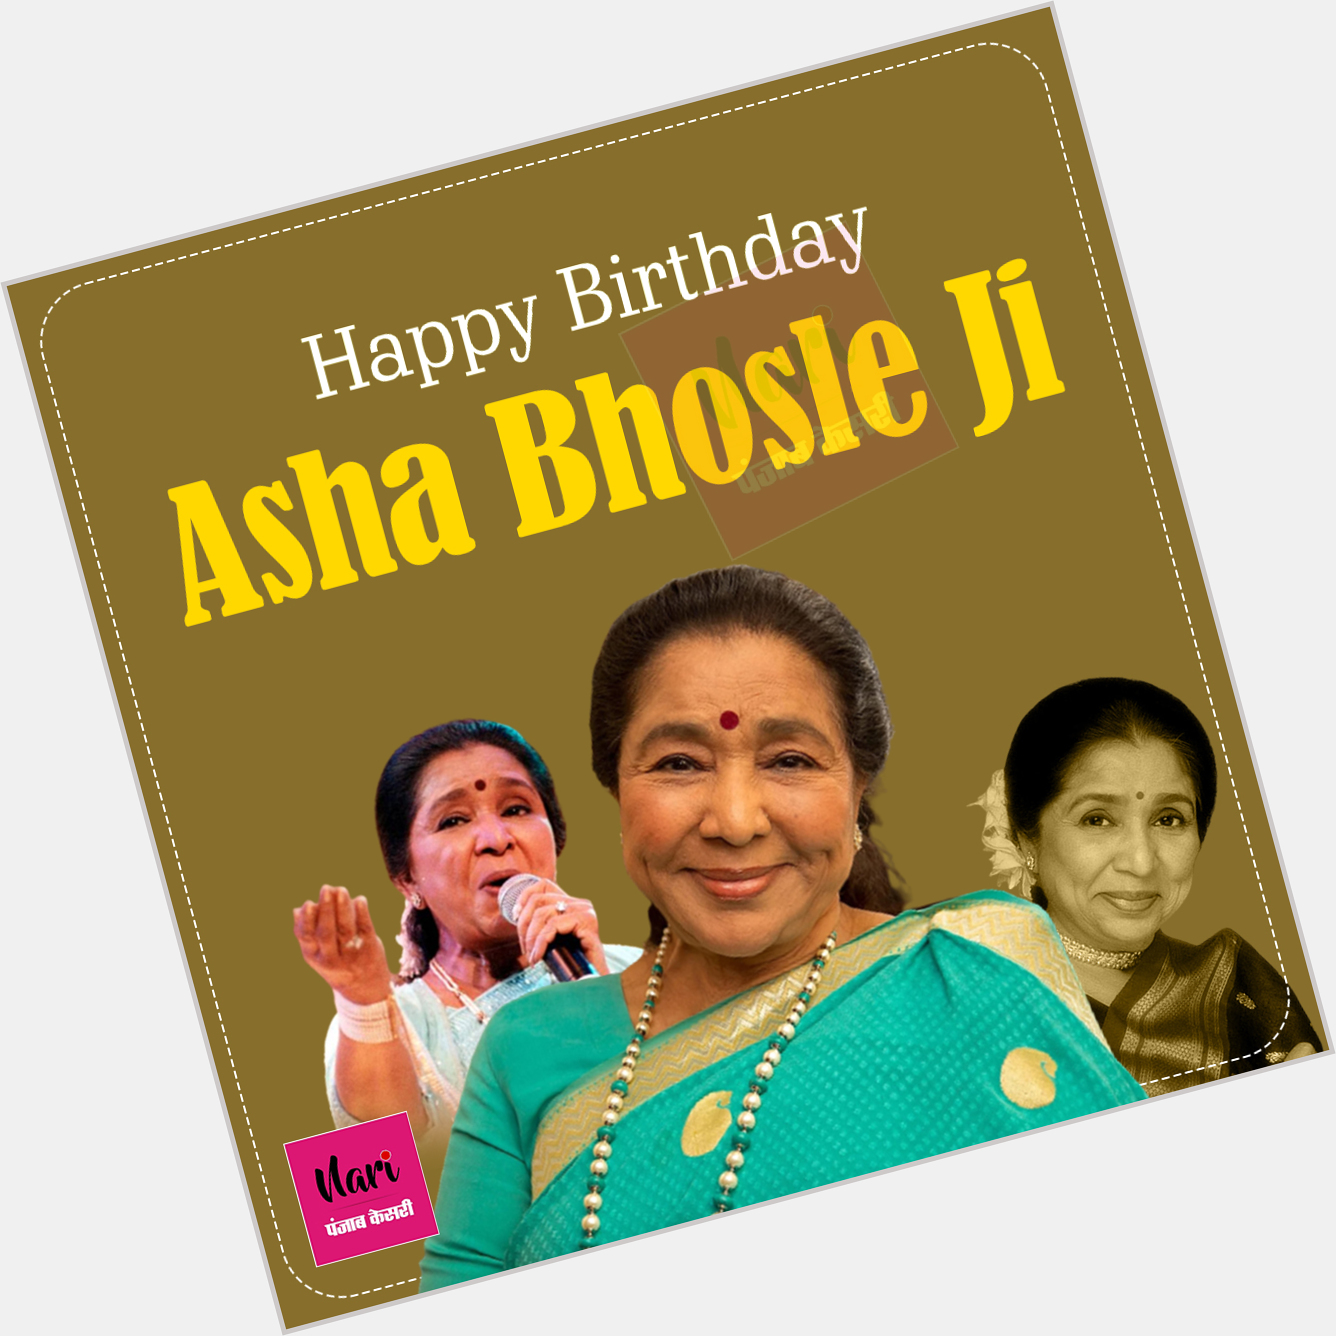 Happy Birthday Asha Bhosle Ji     